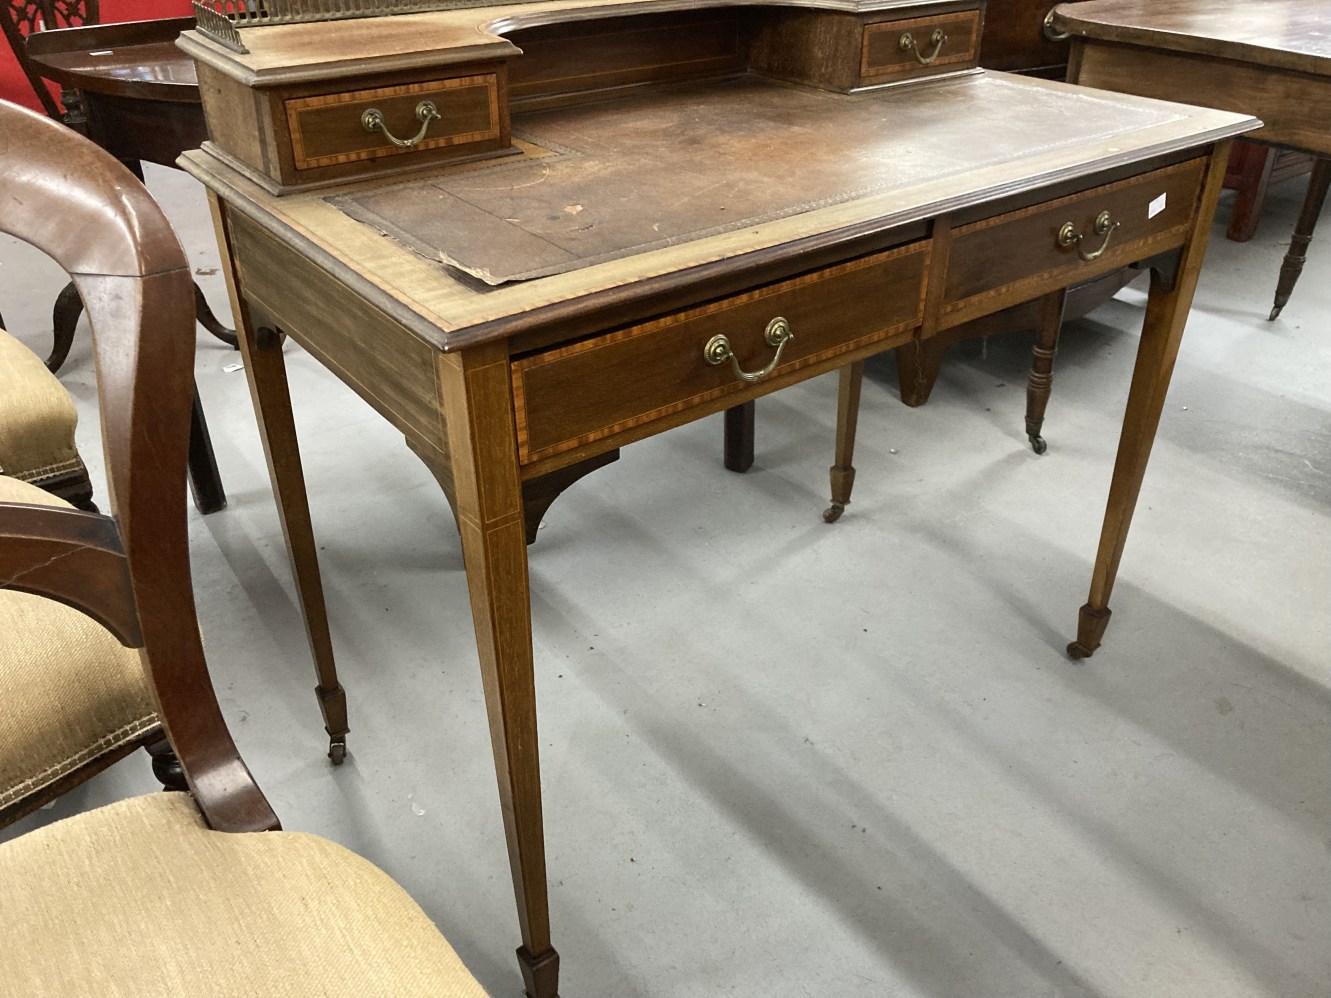 Edwardian mahogany writing desk with satinwood crossbanding and boxwood stringing, raised - Image 2 of 2